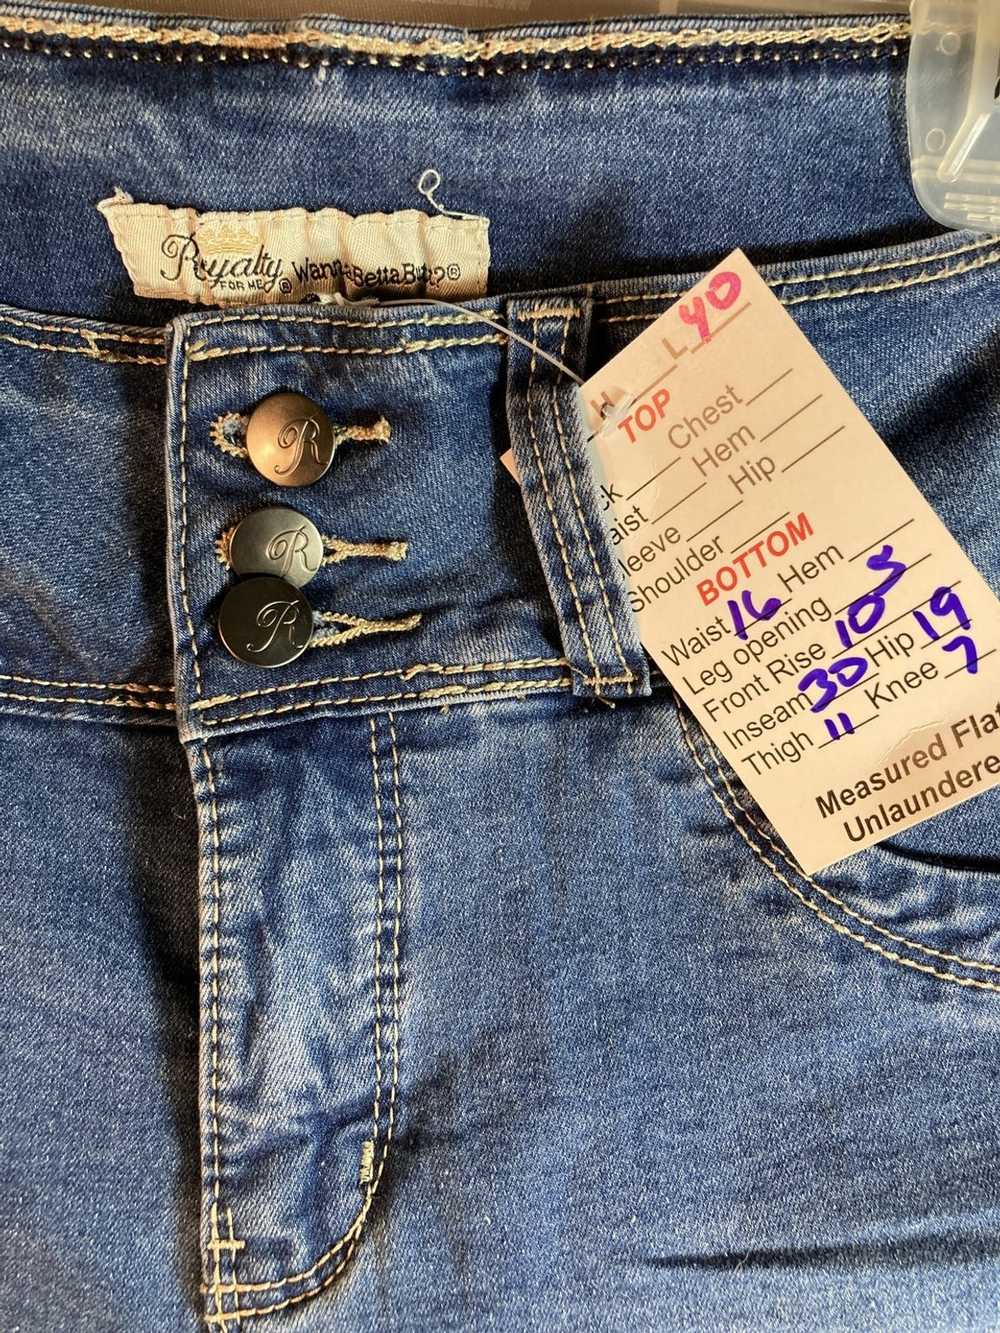 Designer Royalty jeans “wannabettabutt?” Size 8 3… - image 3